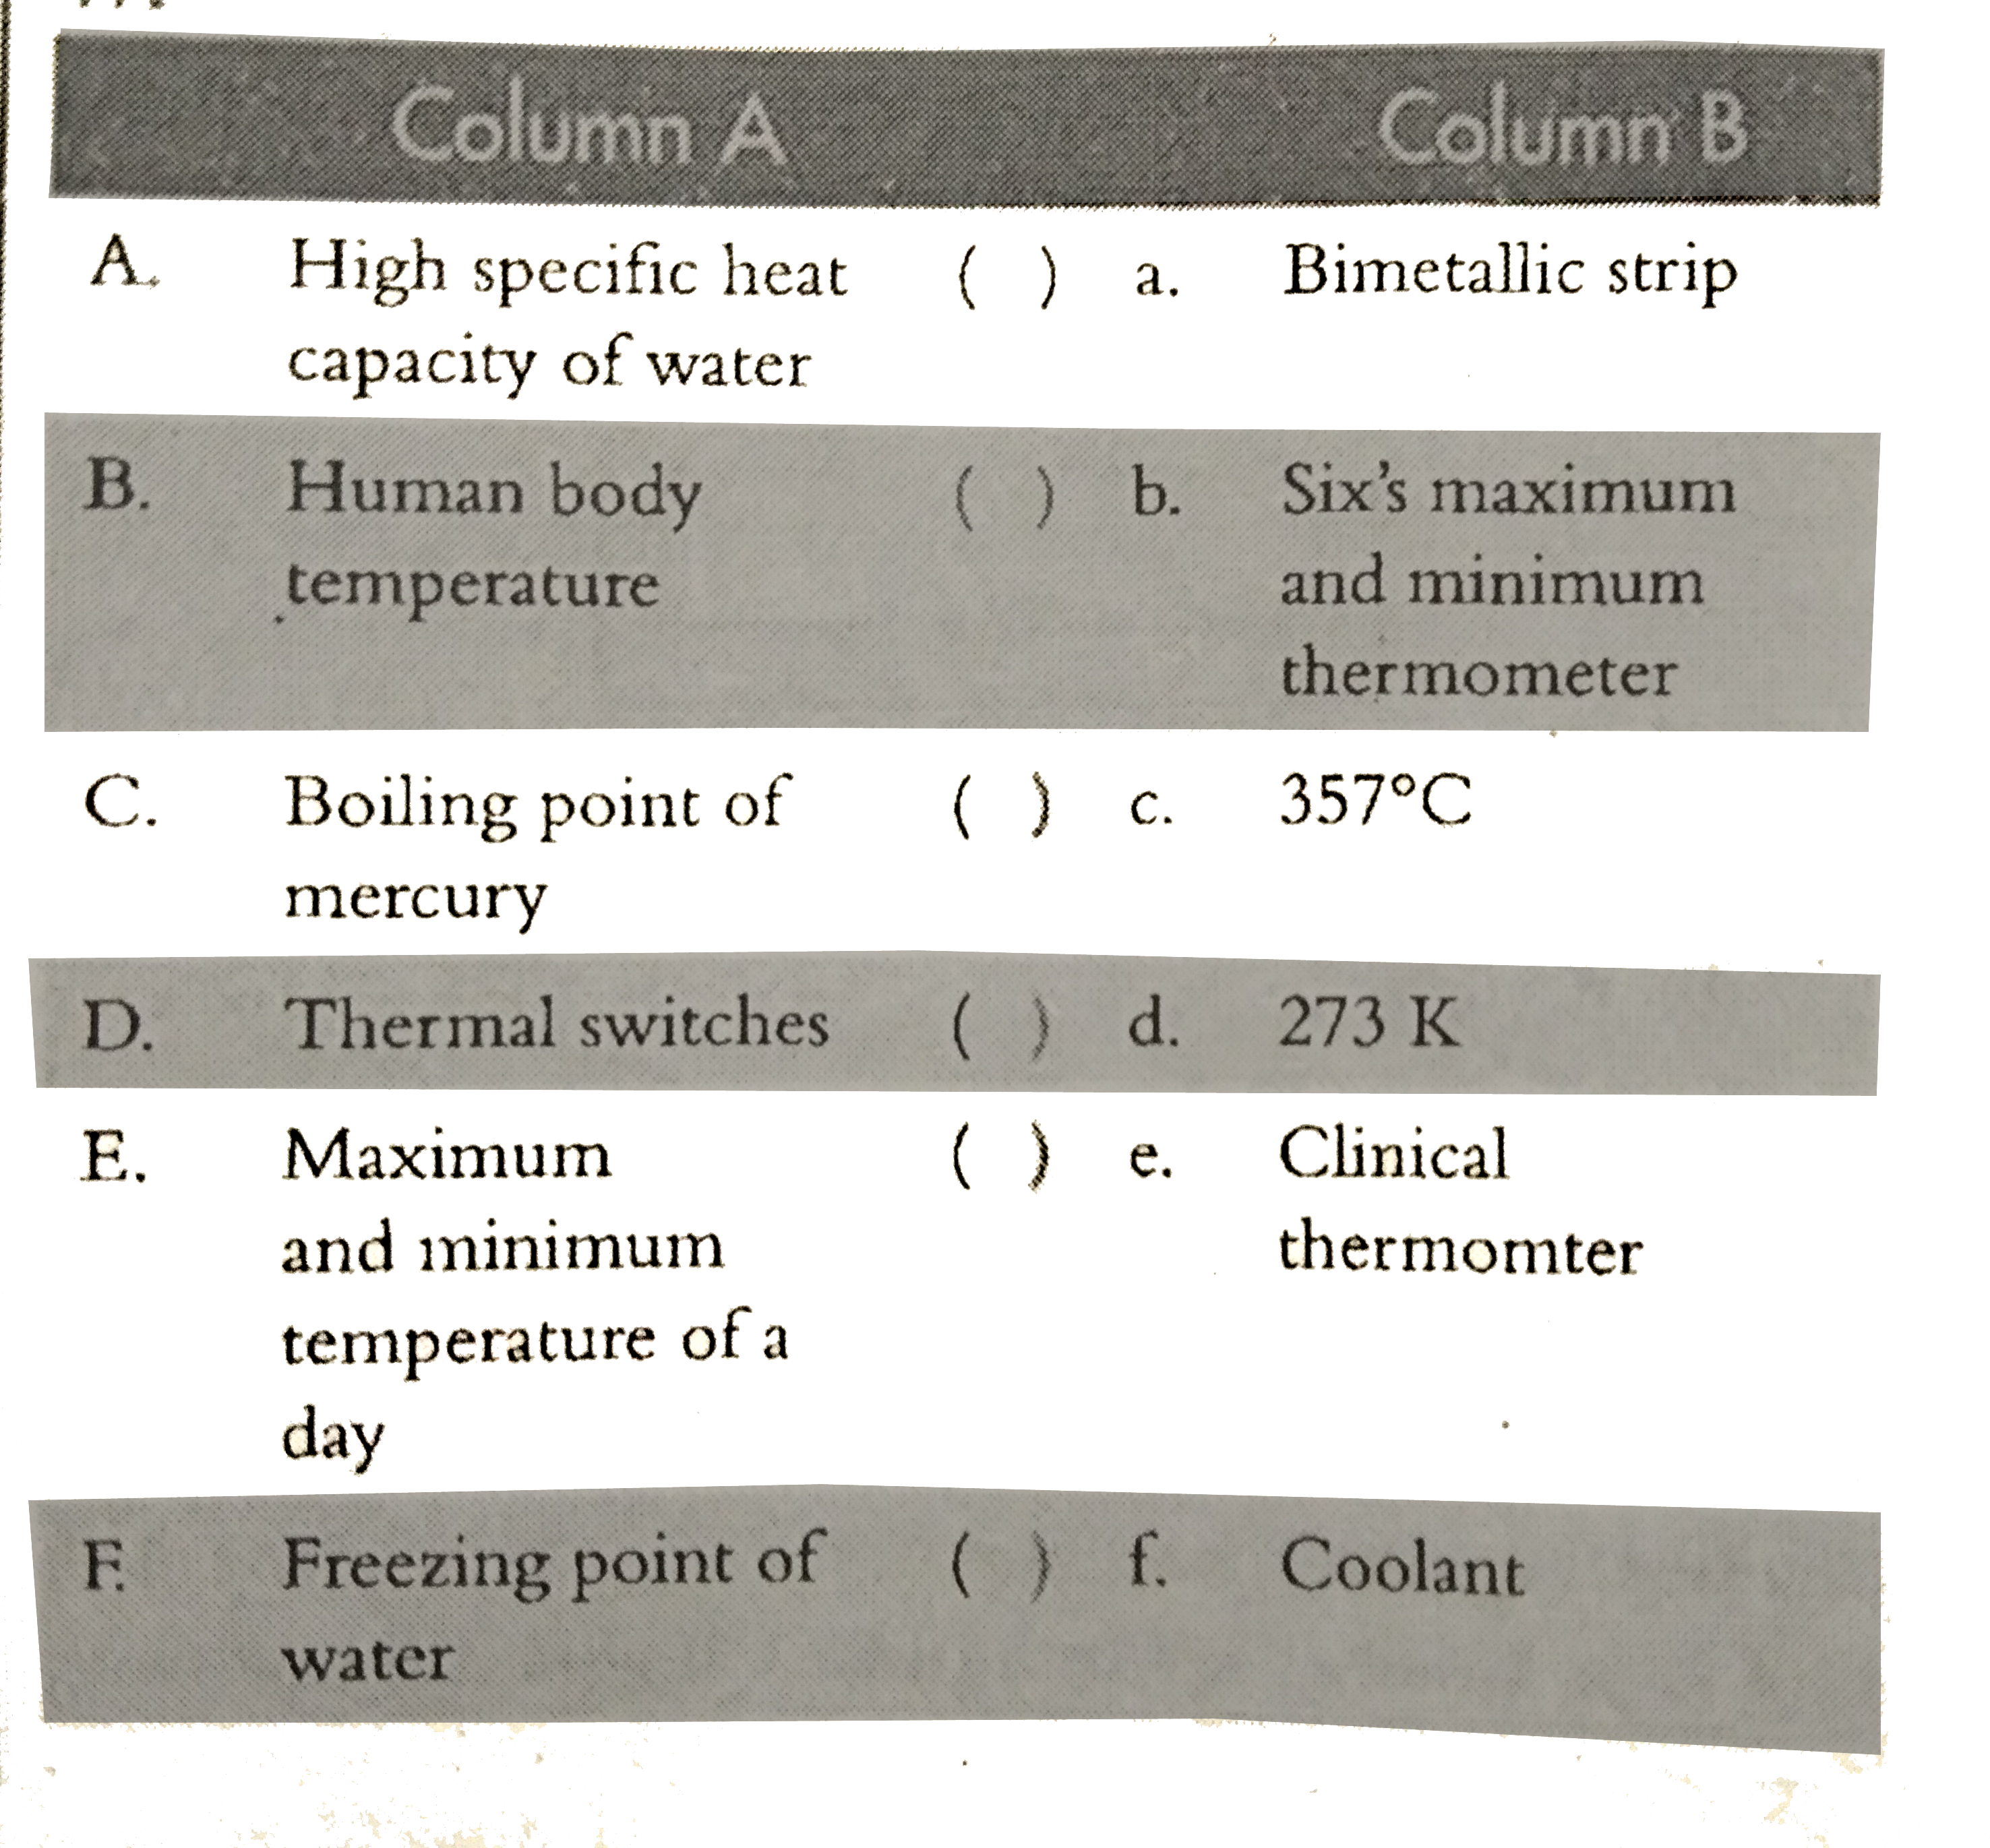 Match columns